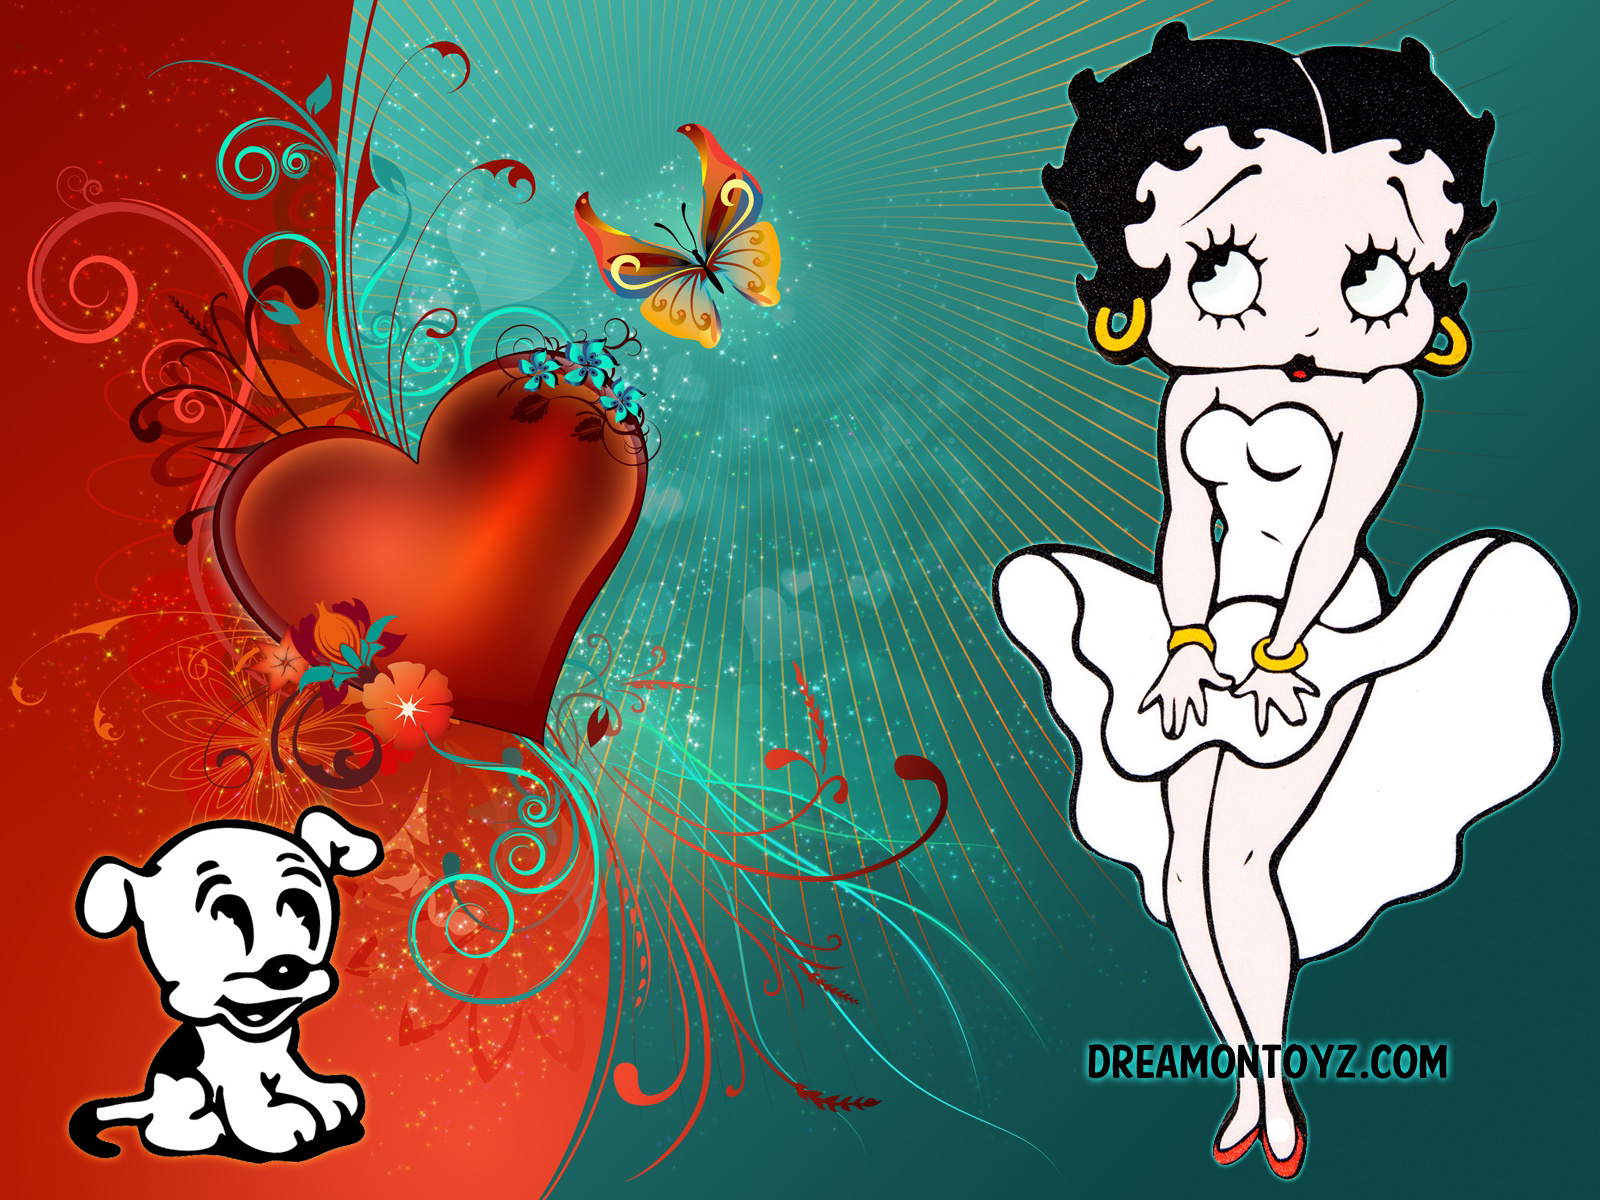 Betty Boop Desktop Wallpaper Image Amp Pictures Becuo